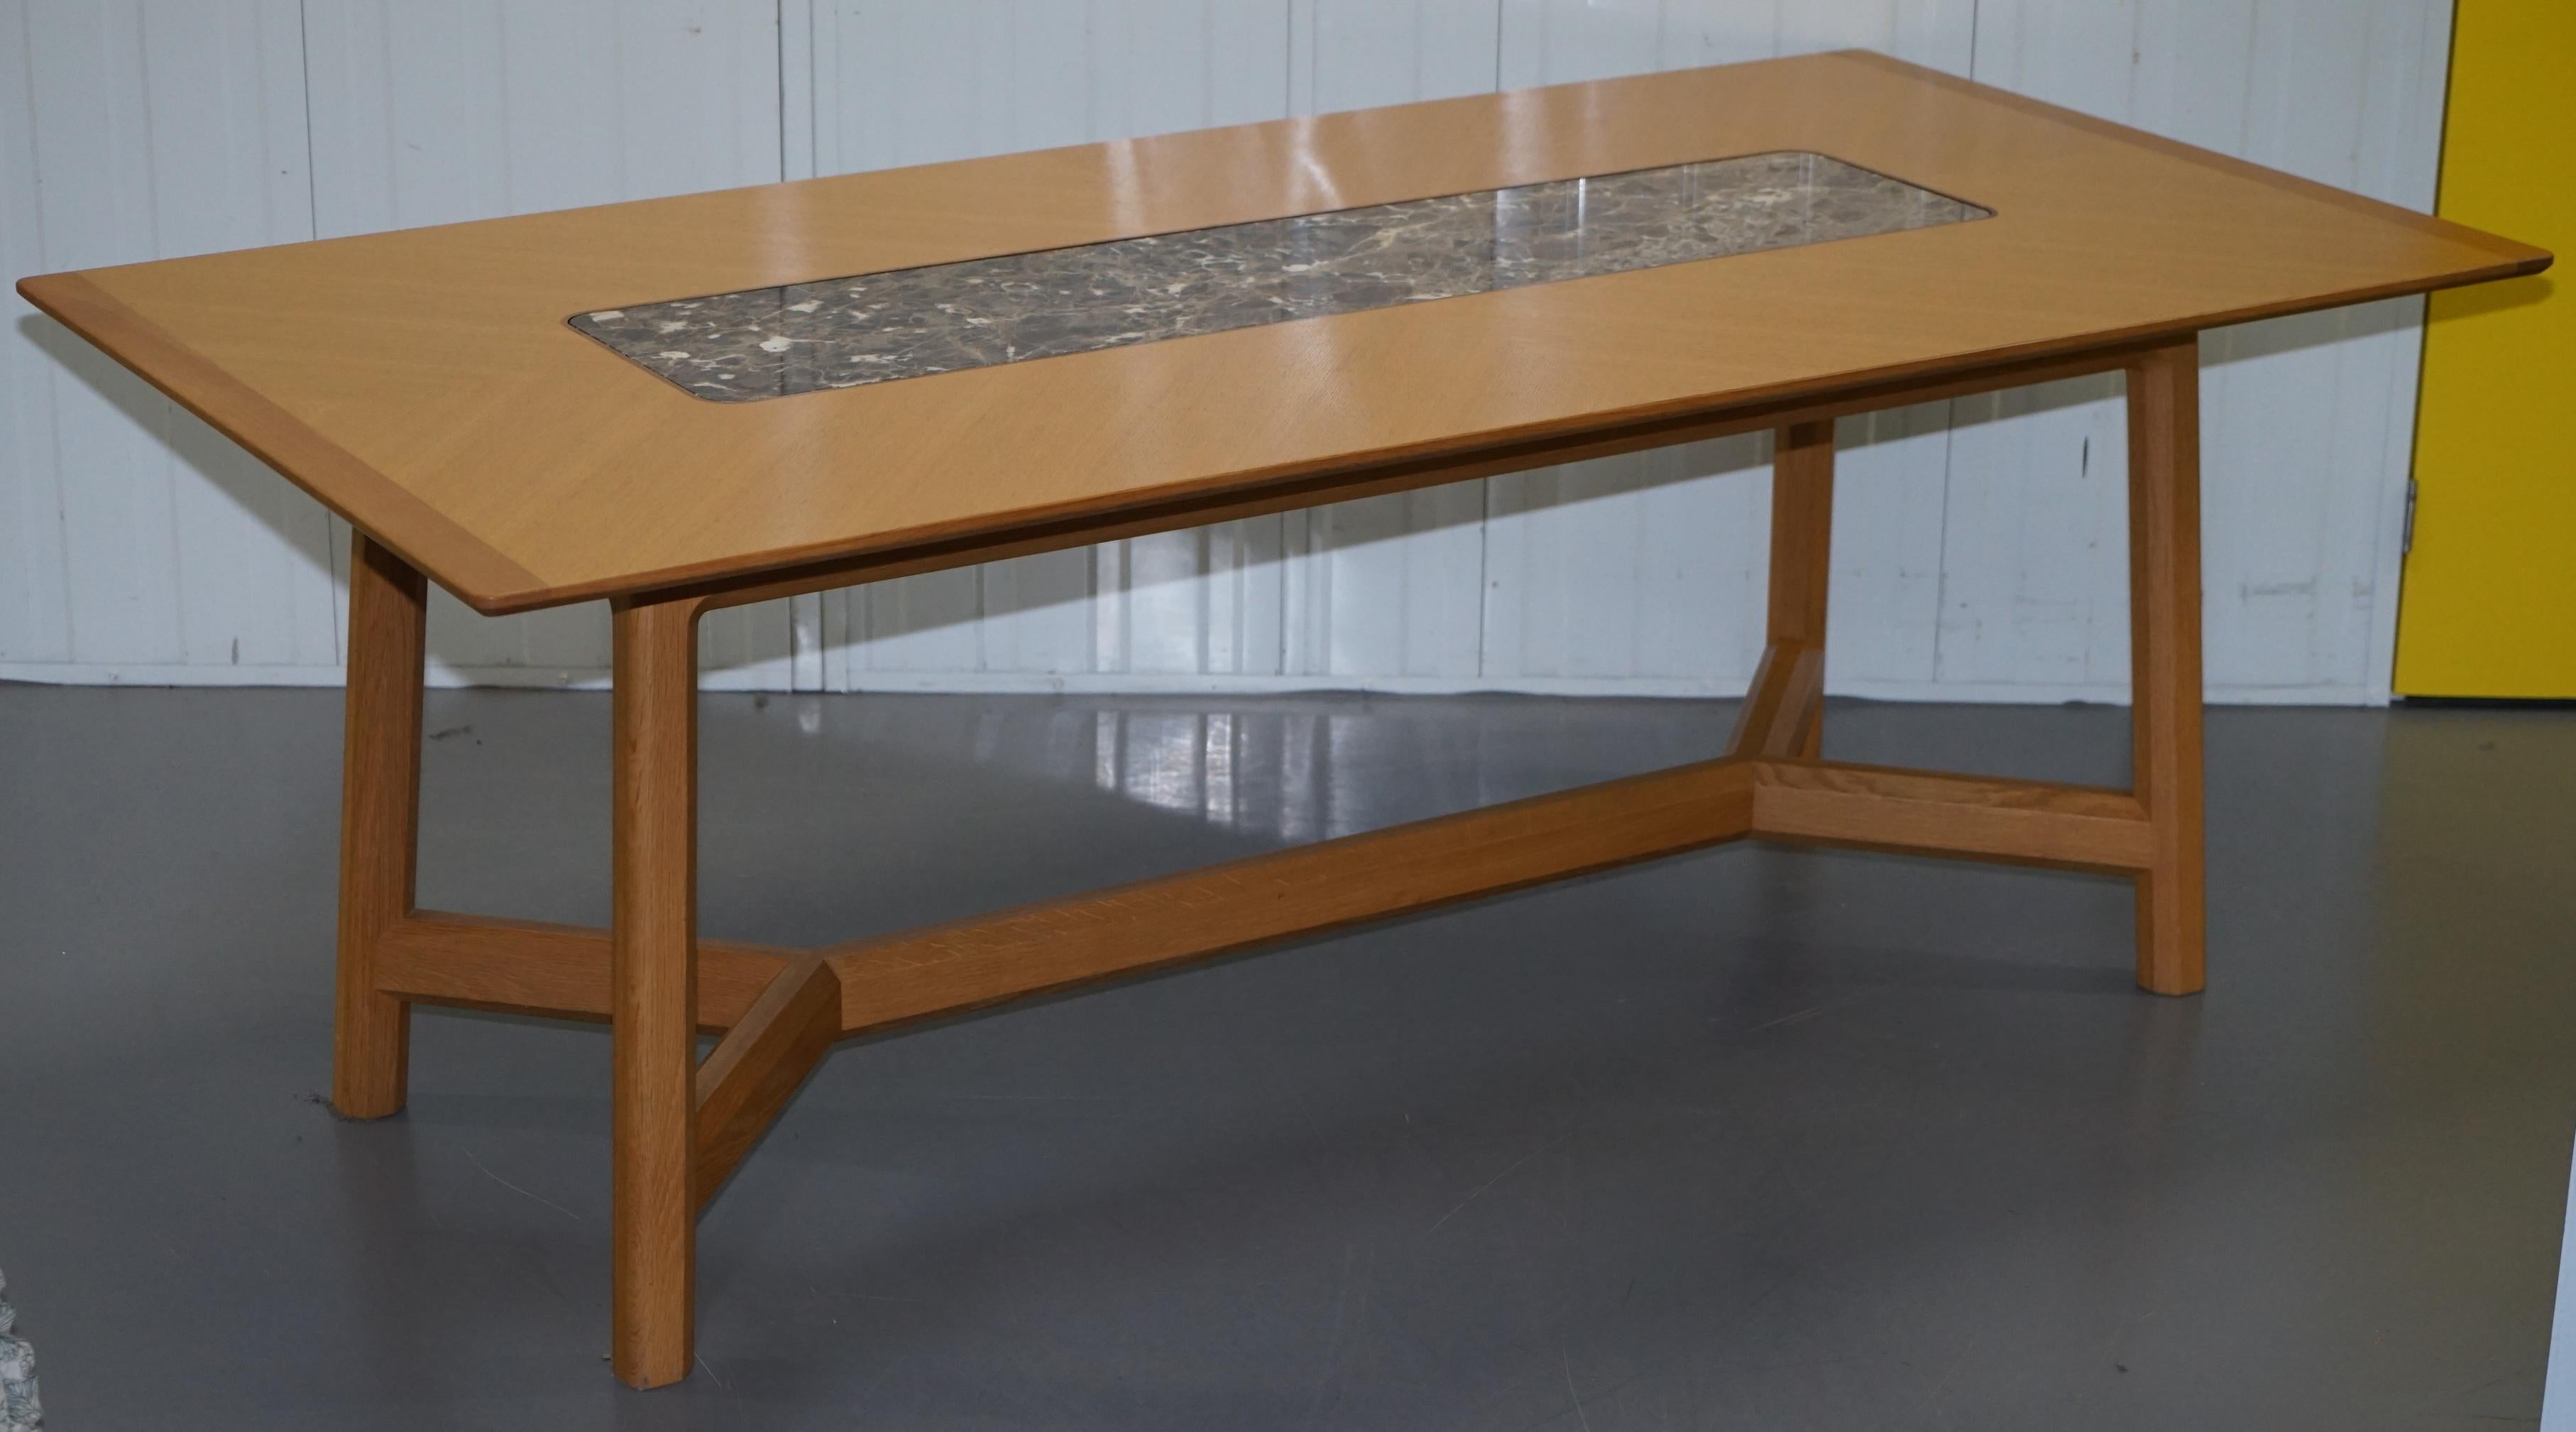 Siamo lieti di offrire in vendita questo splendido tavolo da pranzo in legno massiccio di sicomoro della collezione David Linley in perfette condizioni con inserto in marmo A. David RRP £ 14.500

Un tavolo molto bello e ben fatto, l'inserto in